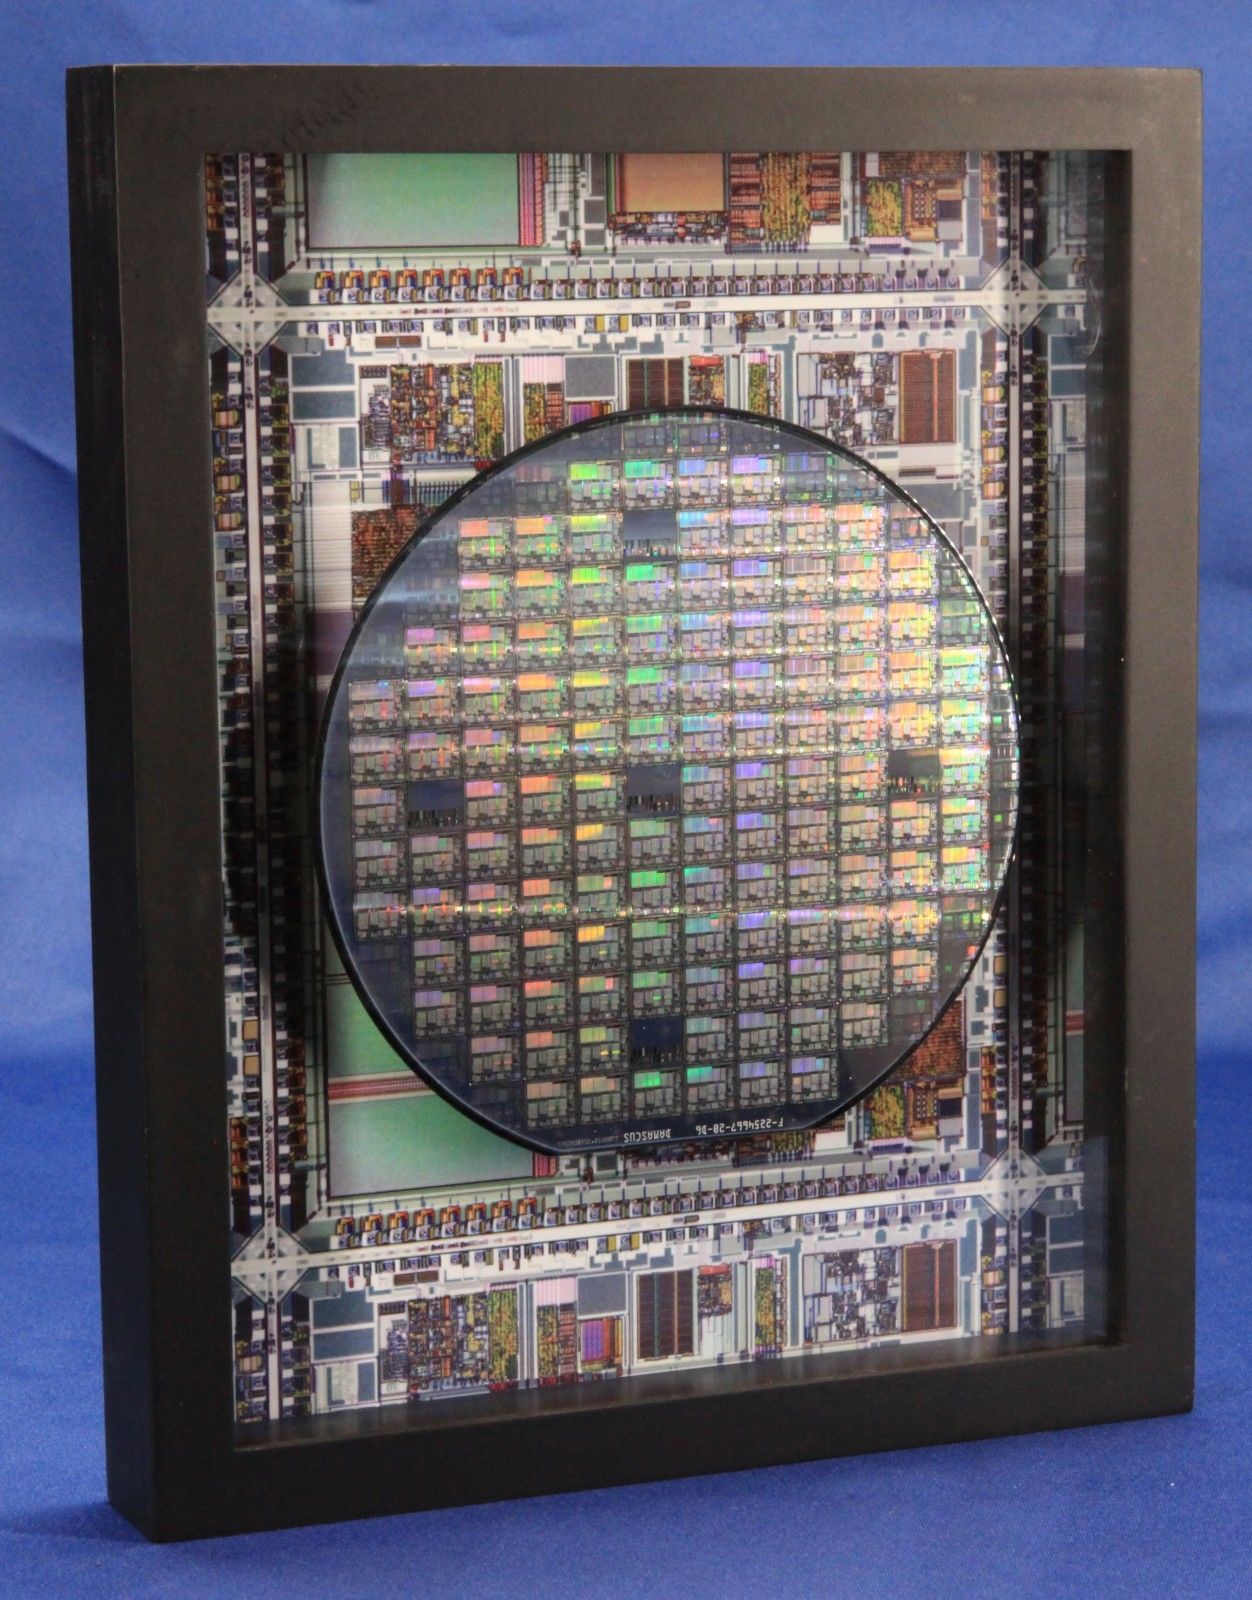 Silicon Wafer - The Microprocessor Chip (TI,TMS370,MPU,CPU,8x10